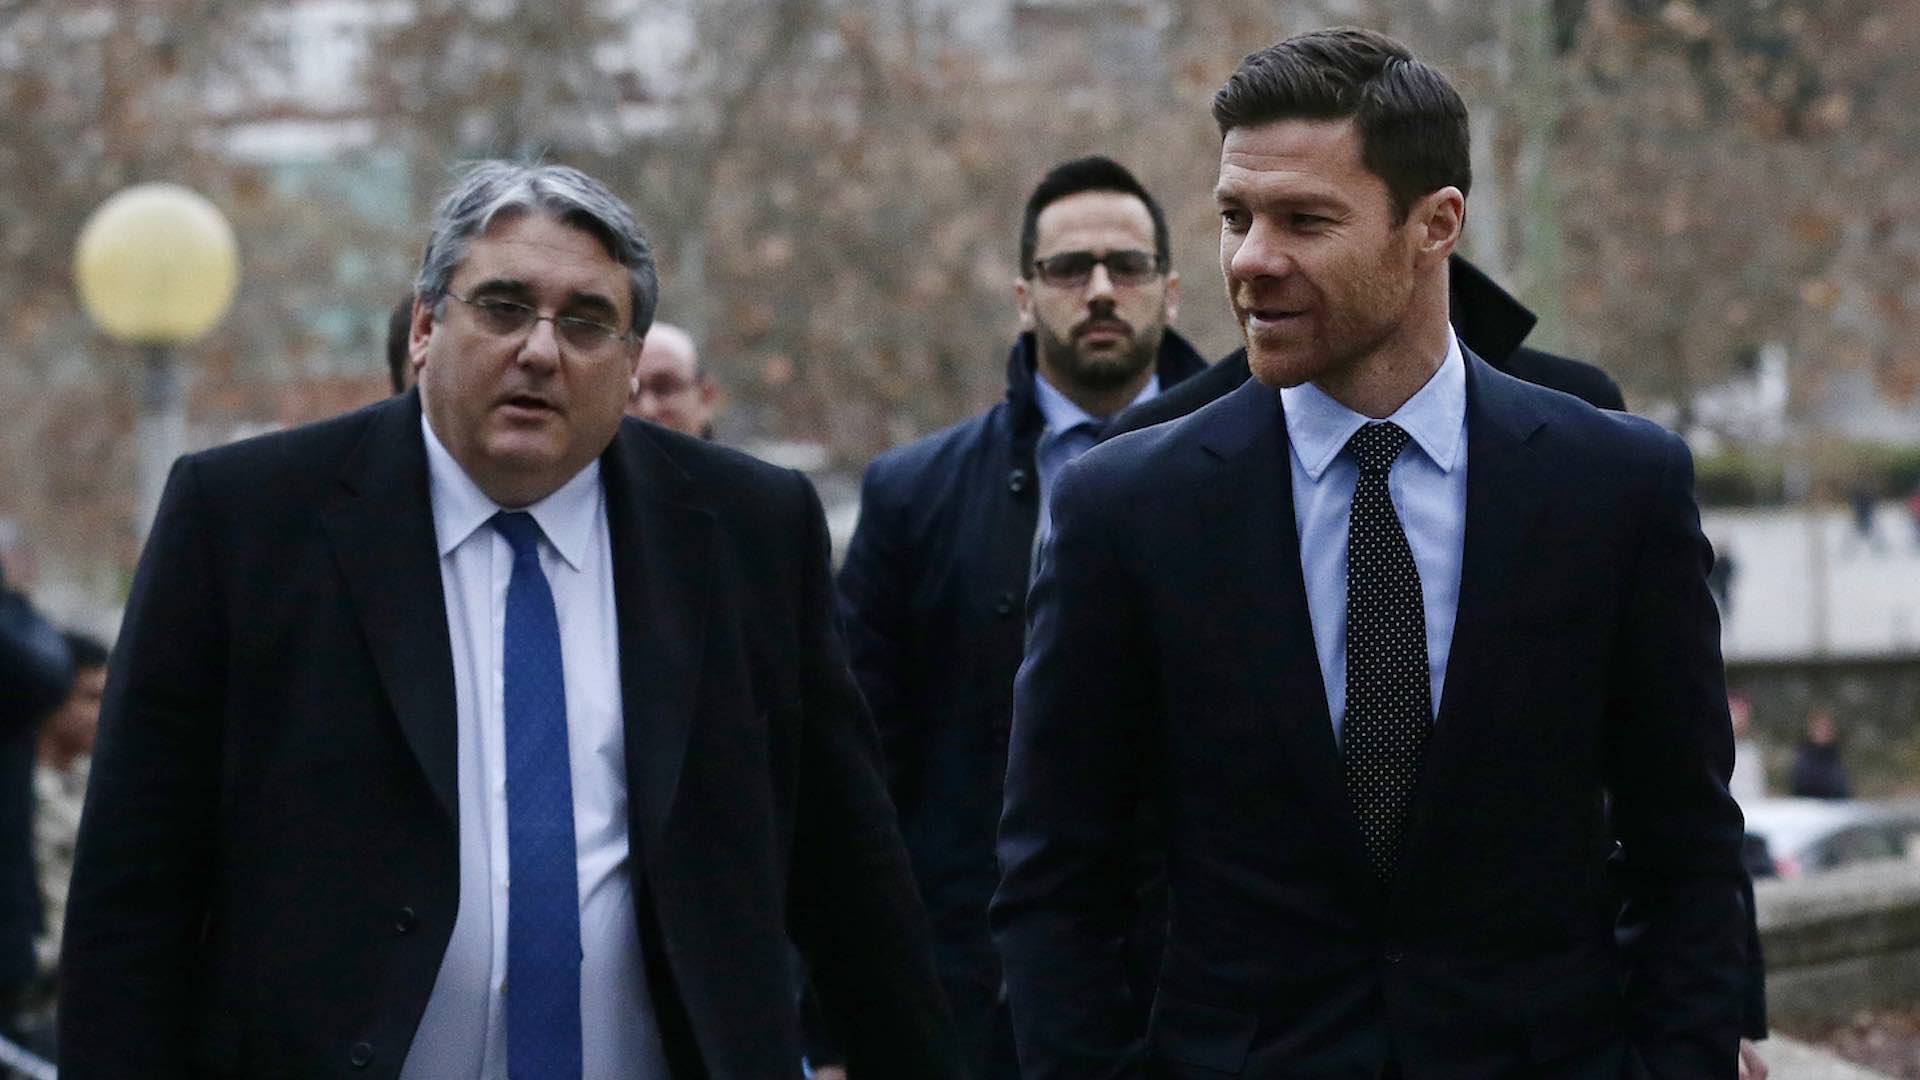 El fiscal rebaja a dos años y medio la petición de cárcel para Xabi Alonso